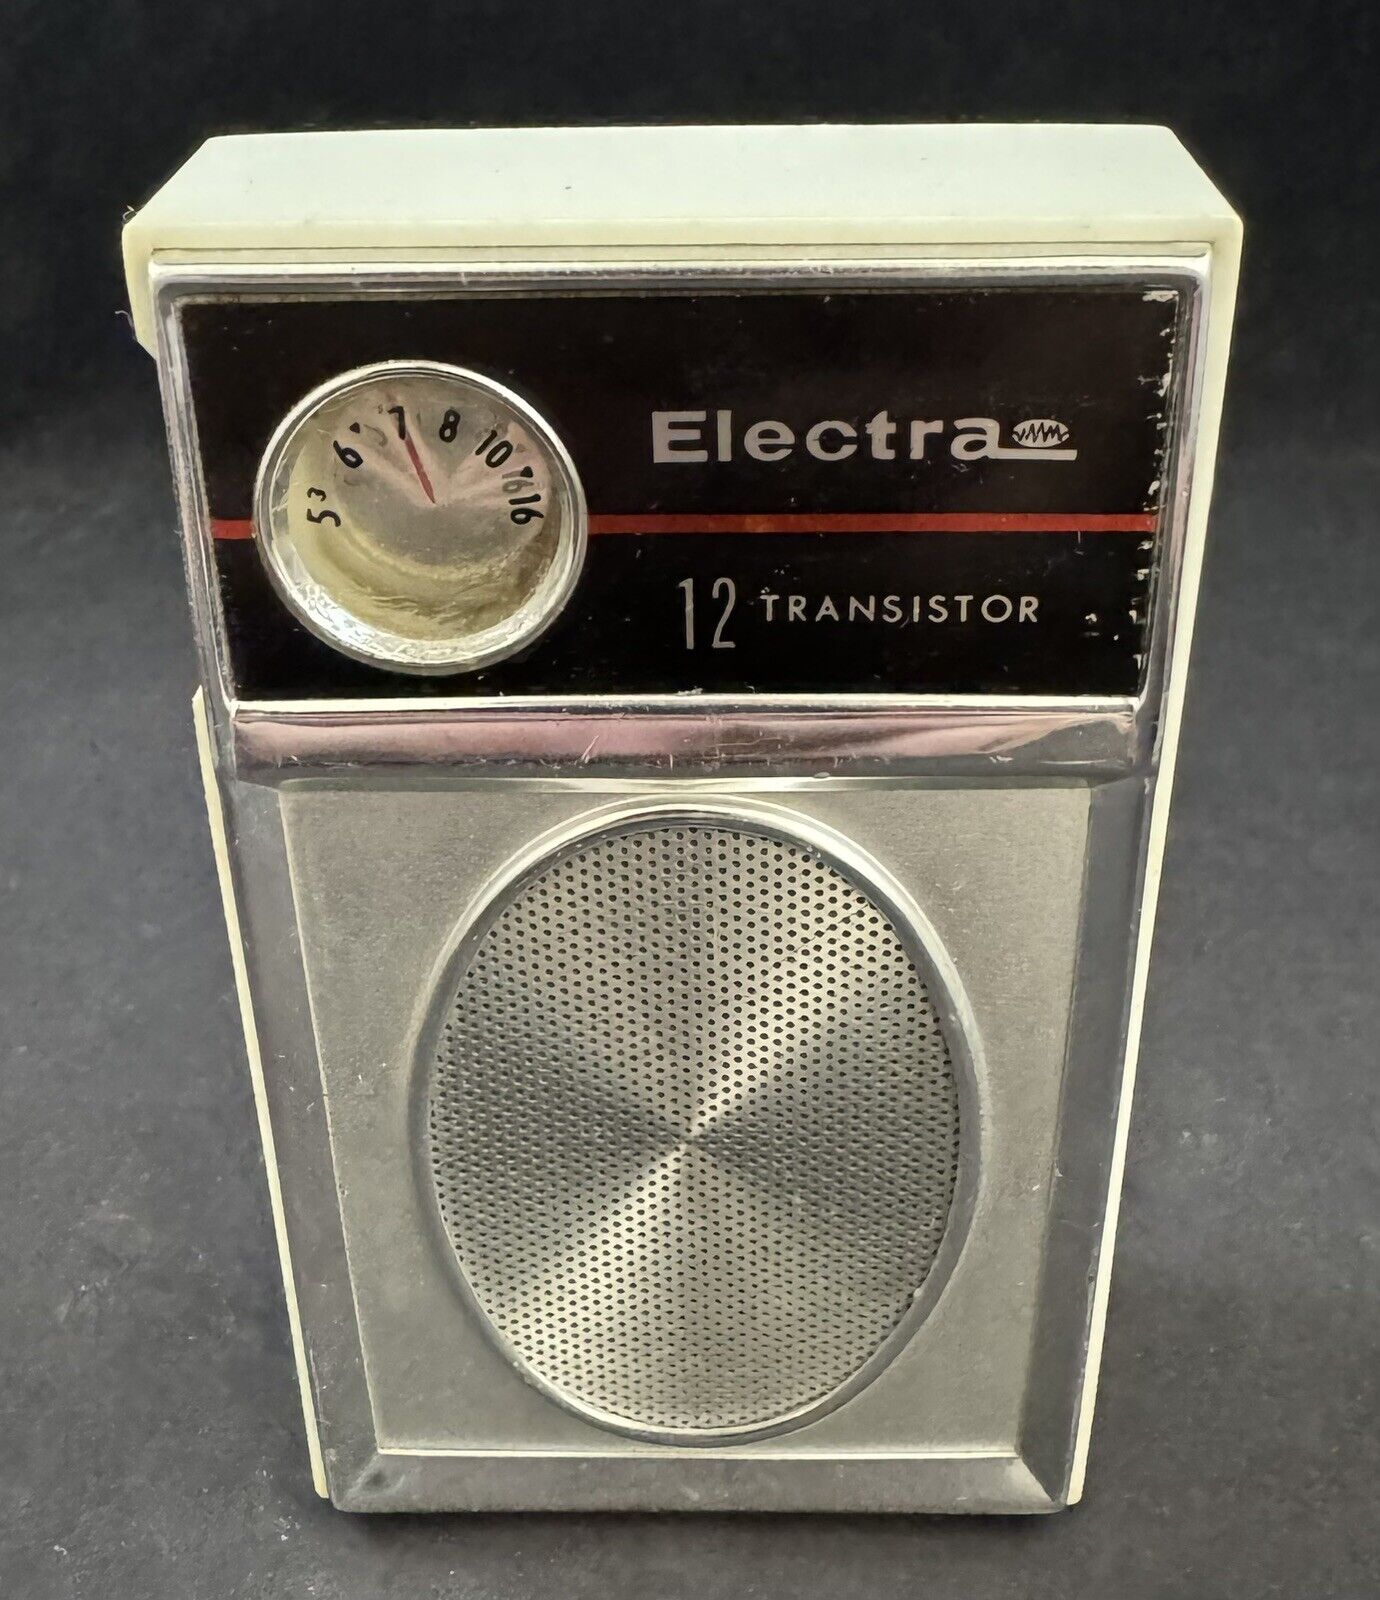 Vintage Electra 12-Transistor Radio w/ Cover Case